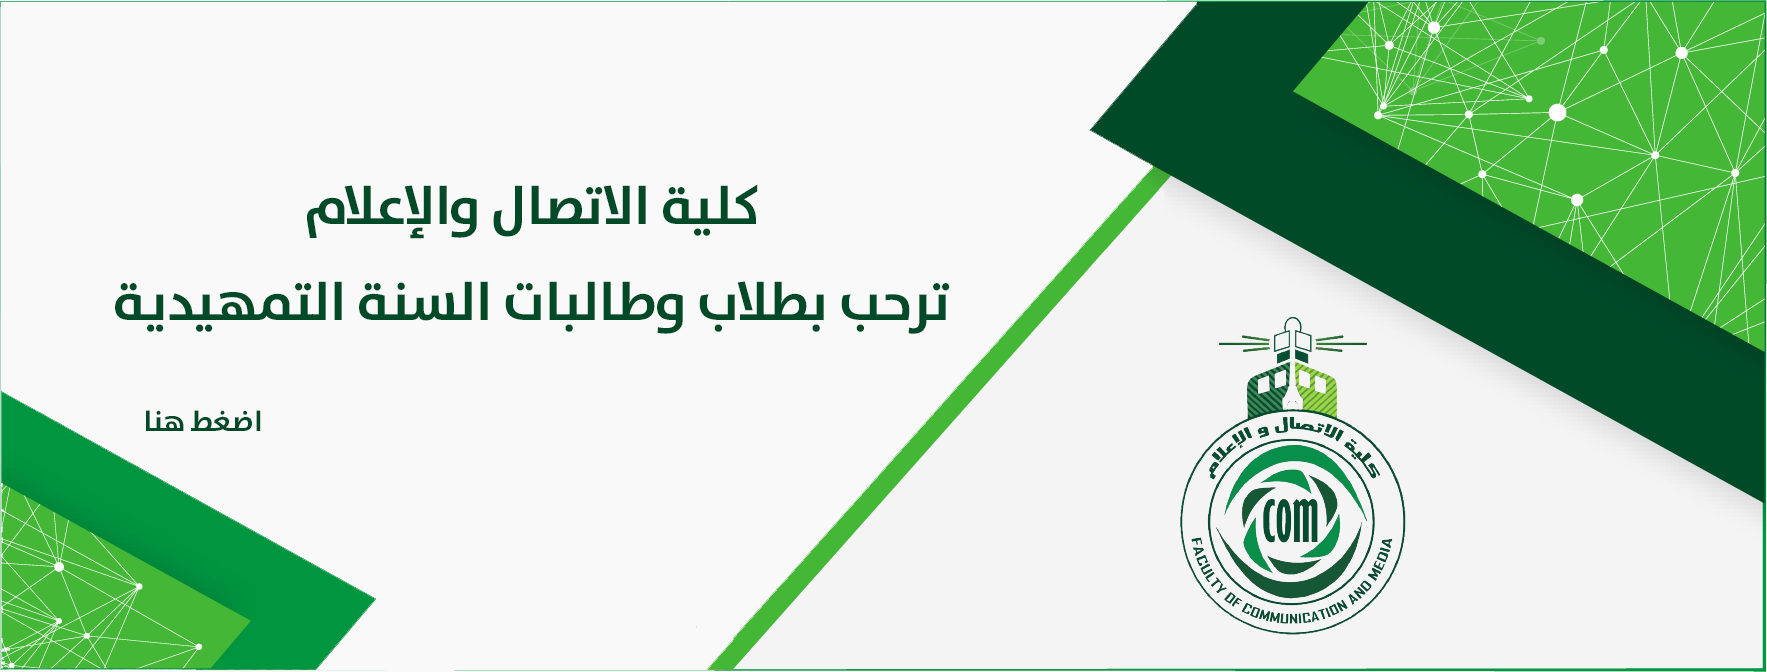 تخصصات كلية الاتصال والاعلام جامعة الملك عبدالعزيز